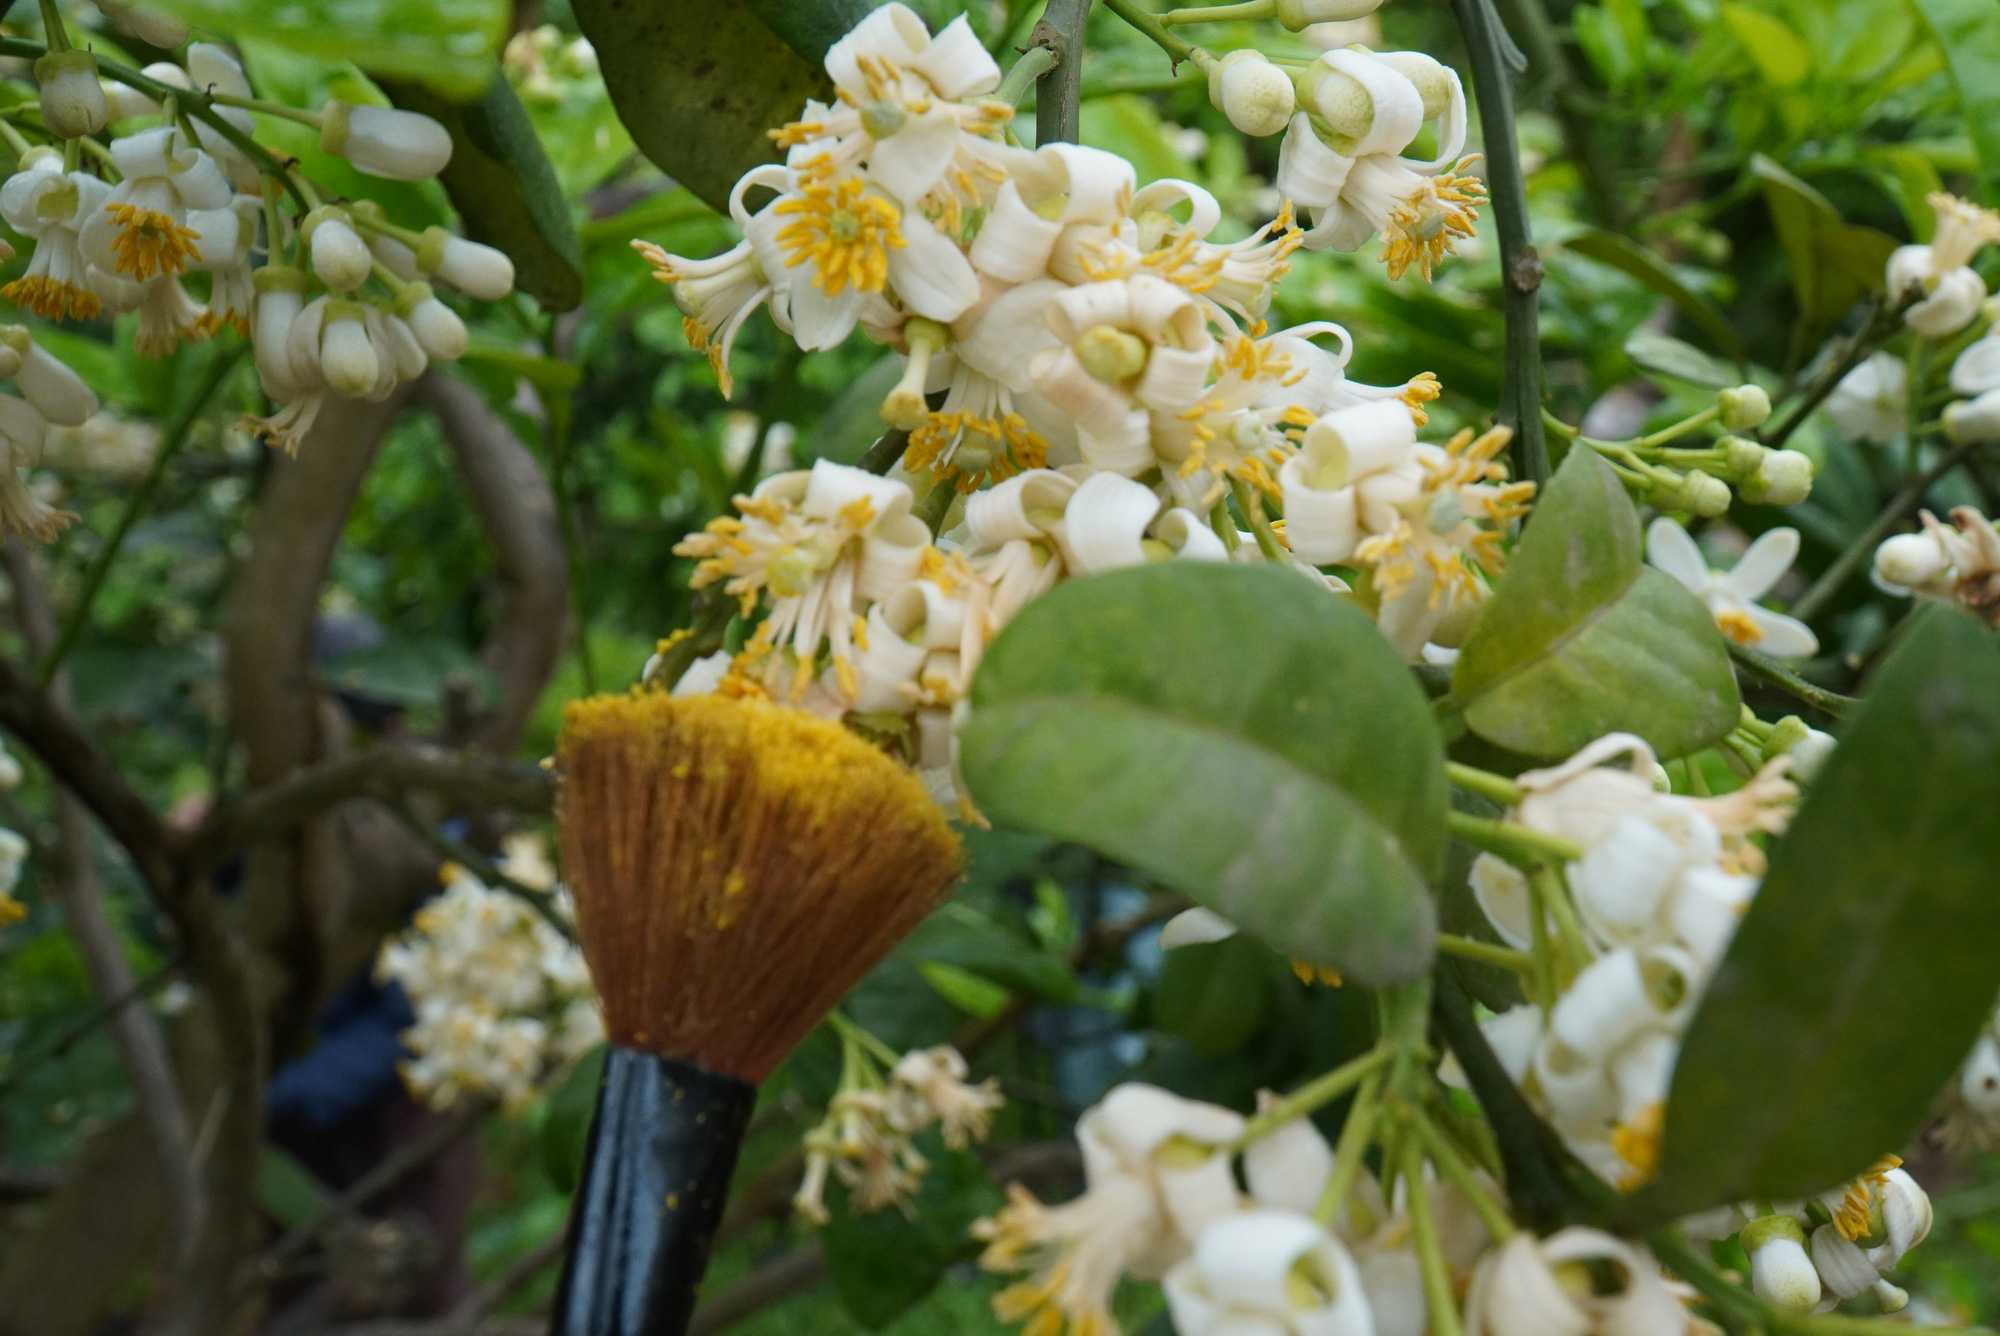 Nông dân Bắc Giang tiết lộ lý do giăng ni lông cho vườn bưởi chớm nở hoa thơm ngát - Ảnh 3.